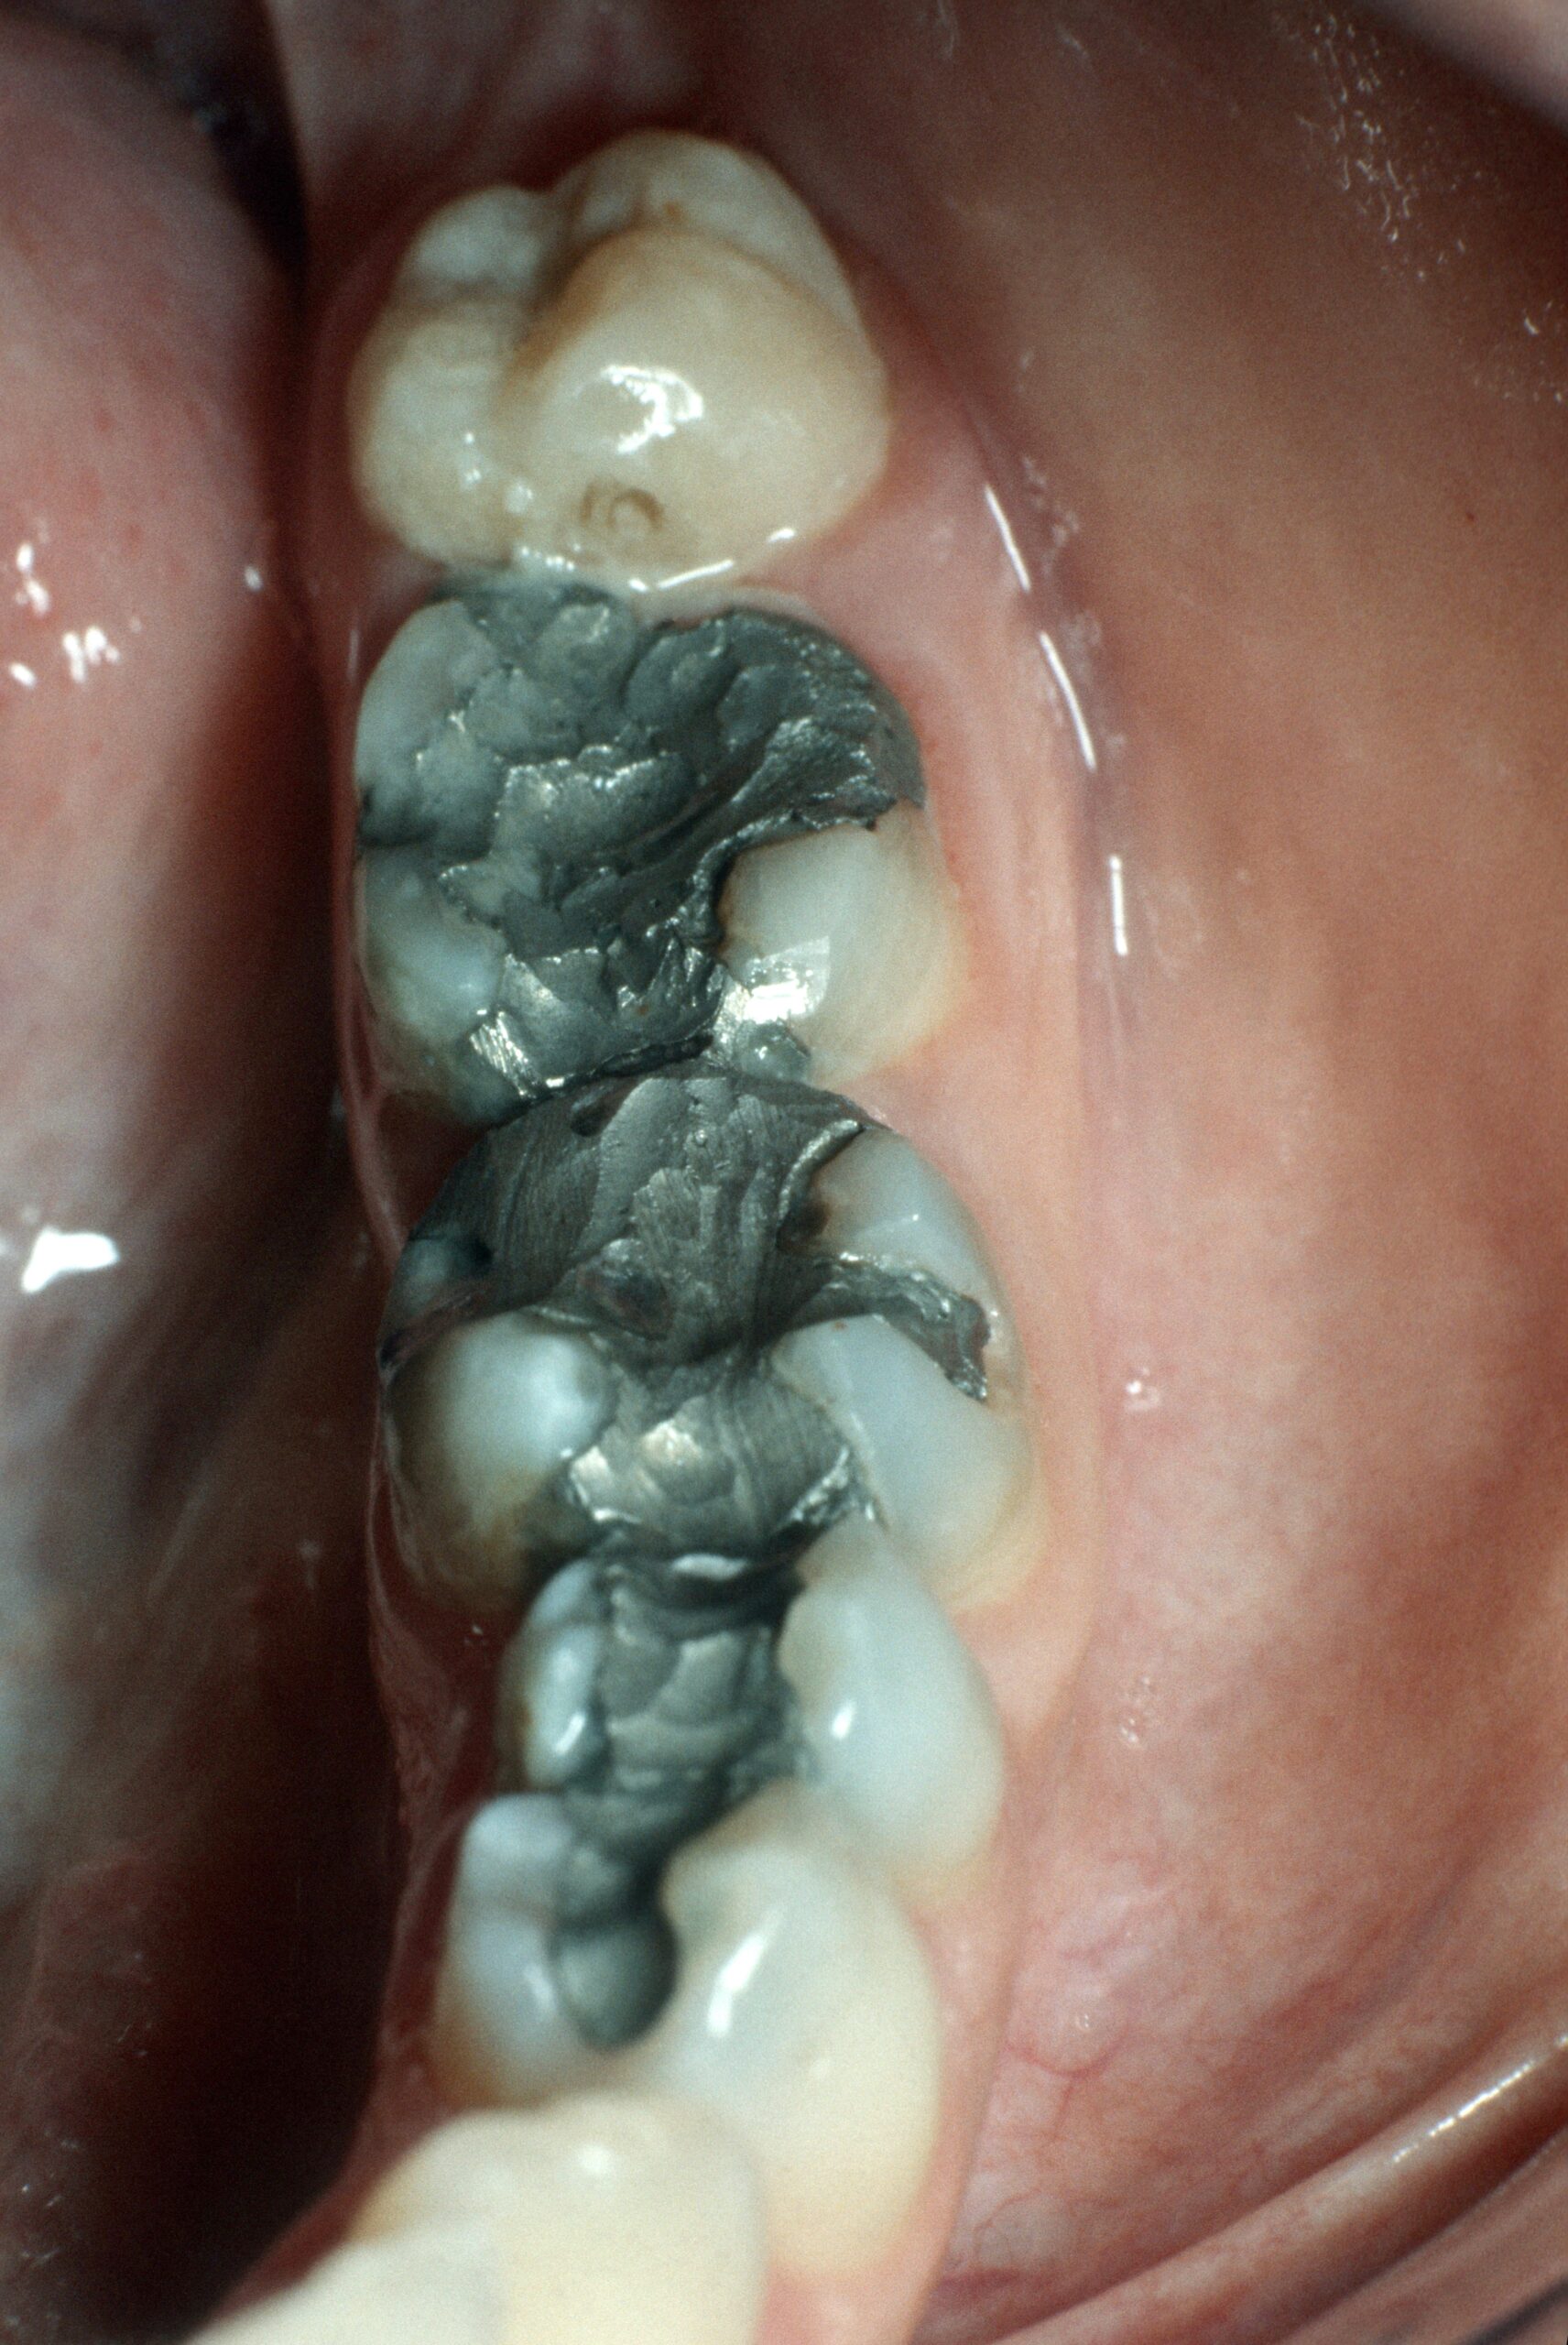 Schlecht verarbeitetes Amalgam korrodiert schneller und sondert Quecksilber in die Mundhöhle ab, welches beim Kauen verschluckt wird